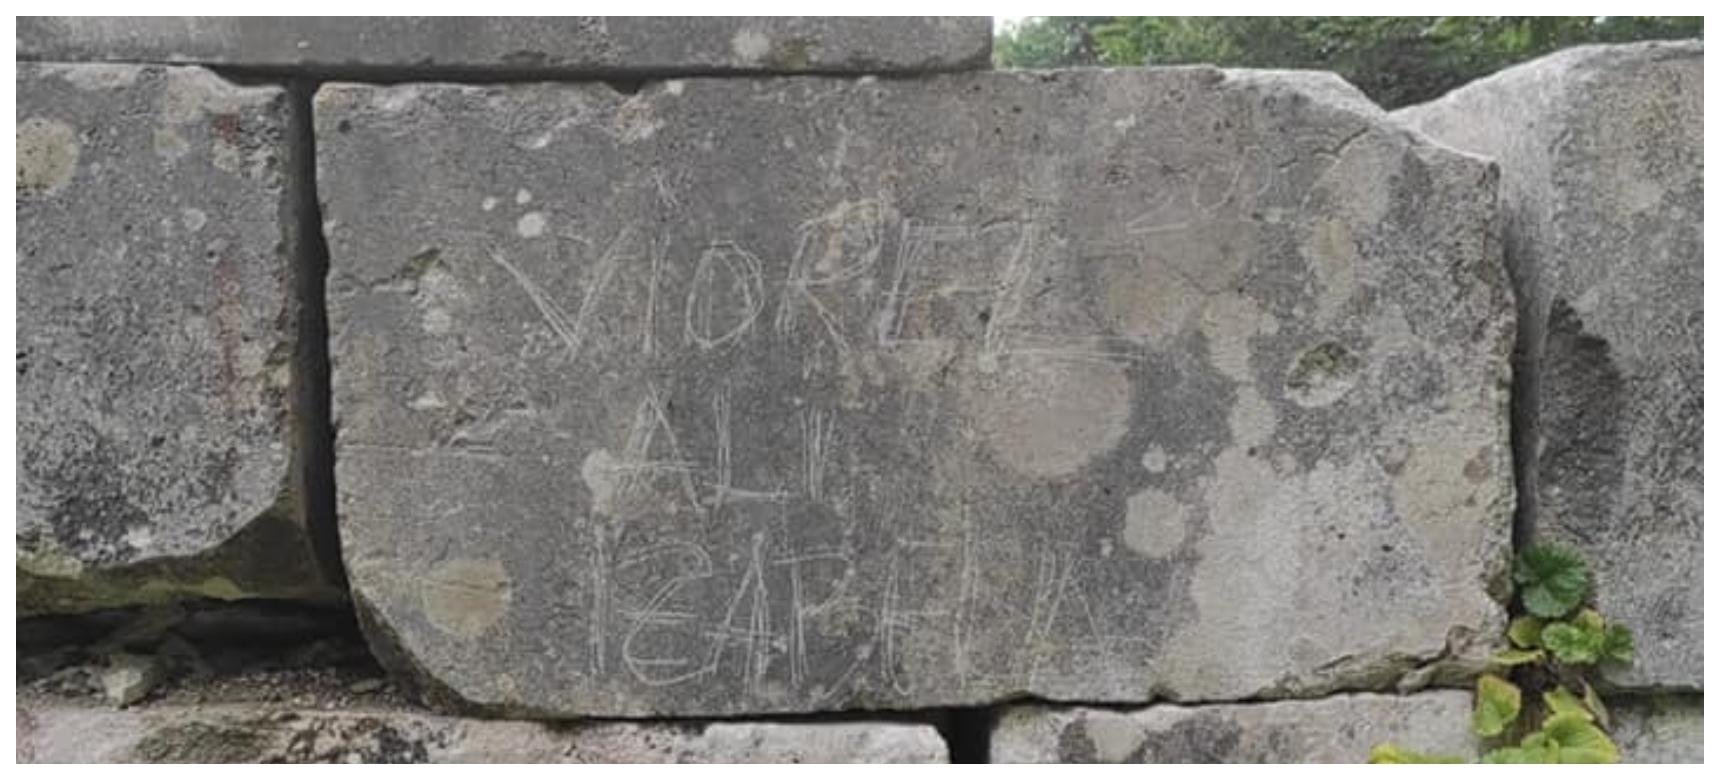 Bărbatul riscă dosar penal după ce şi-a scrijelit numele pe zidul vechi al cetăţii Sarmisegetusa